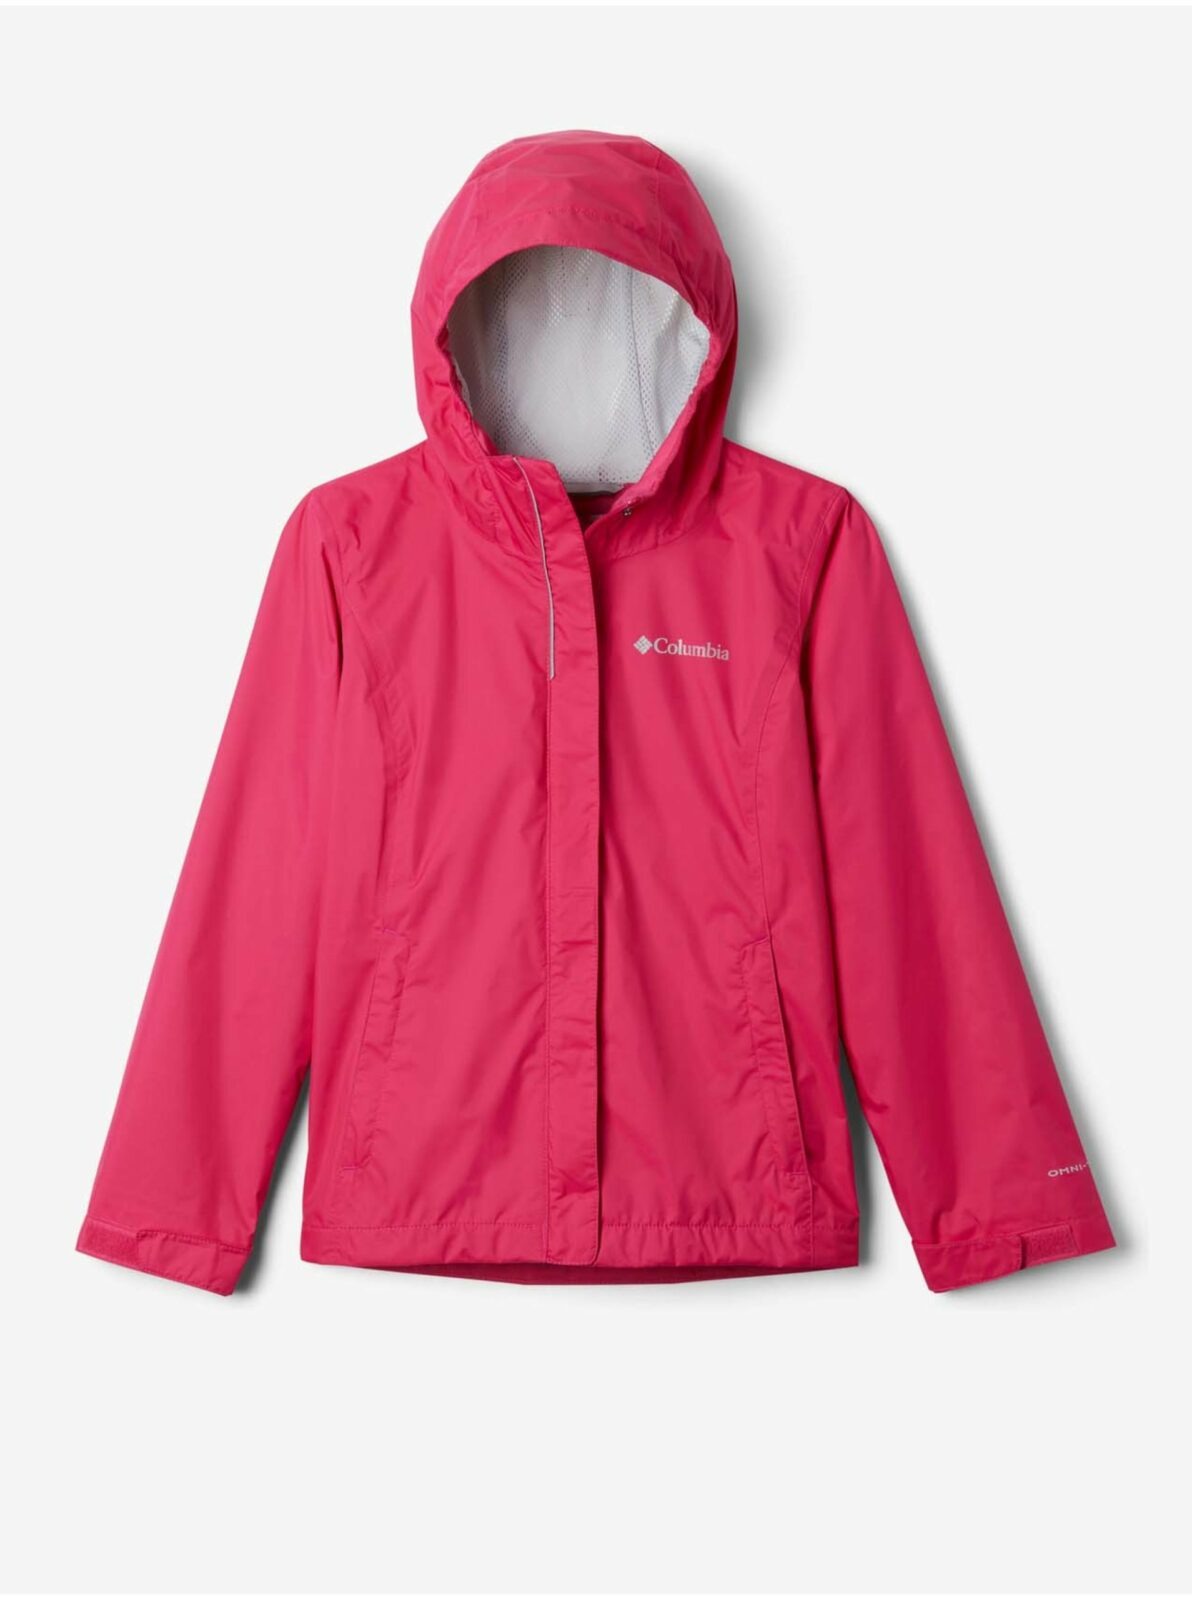 Tmavě růžová holčičí voděodolná bunda s kapucí